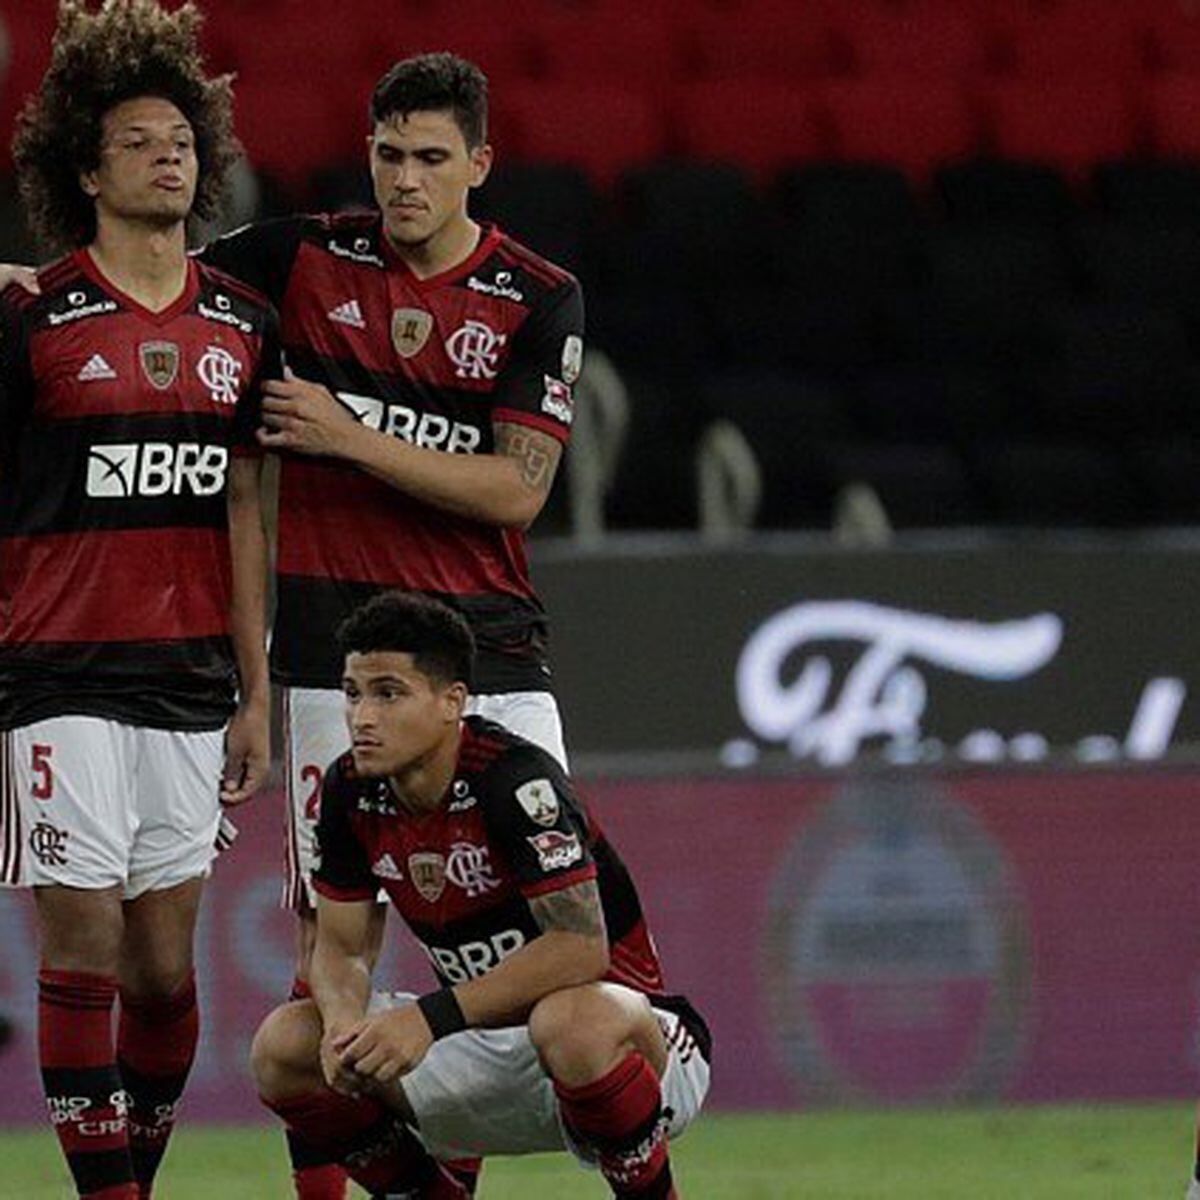 Nos pênaltis, Flamengo perde para o Racing e está eliminado da Libertadores  - Esportes - Campo Grande News